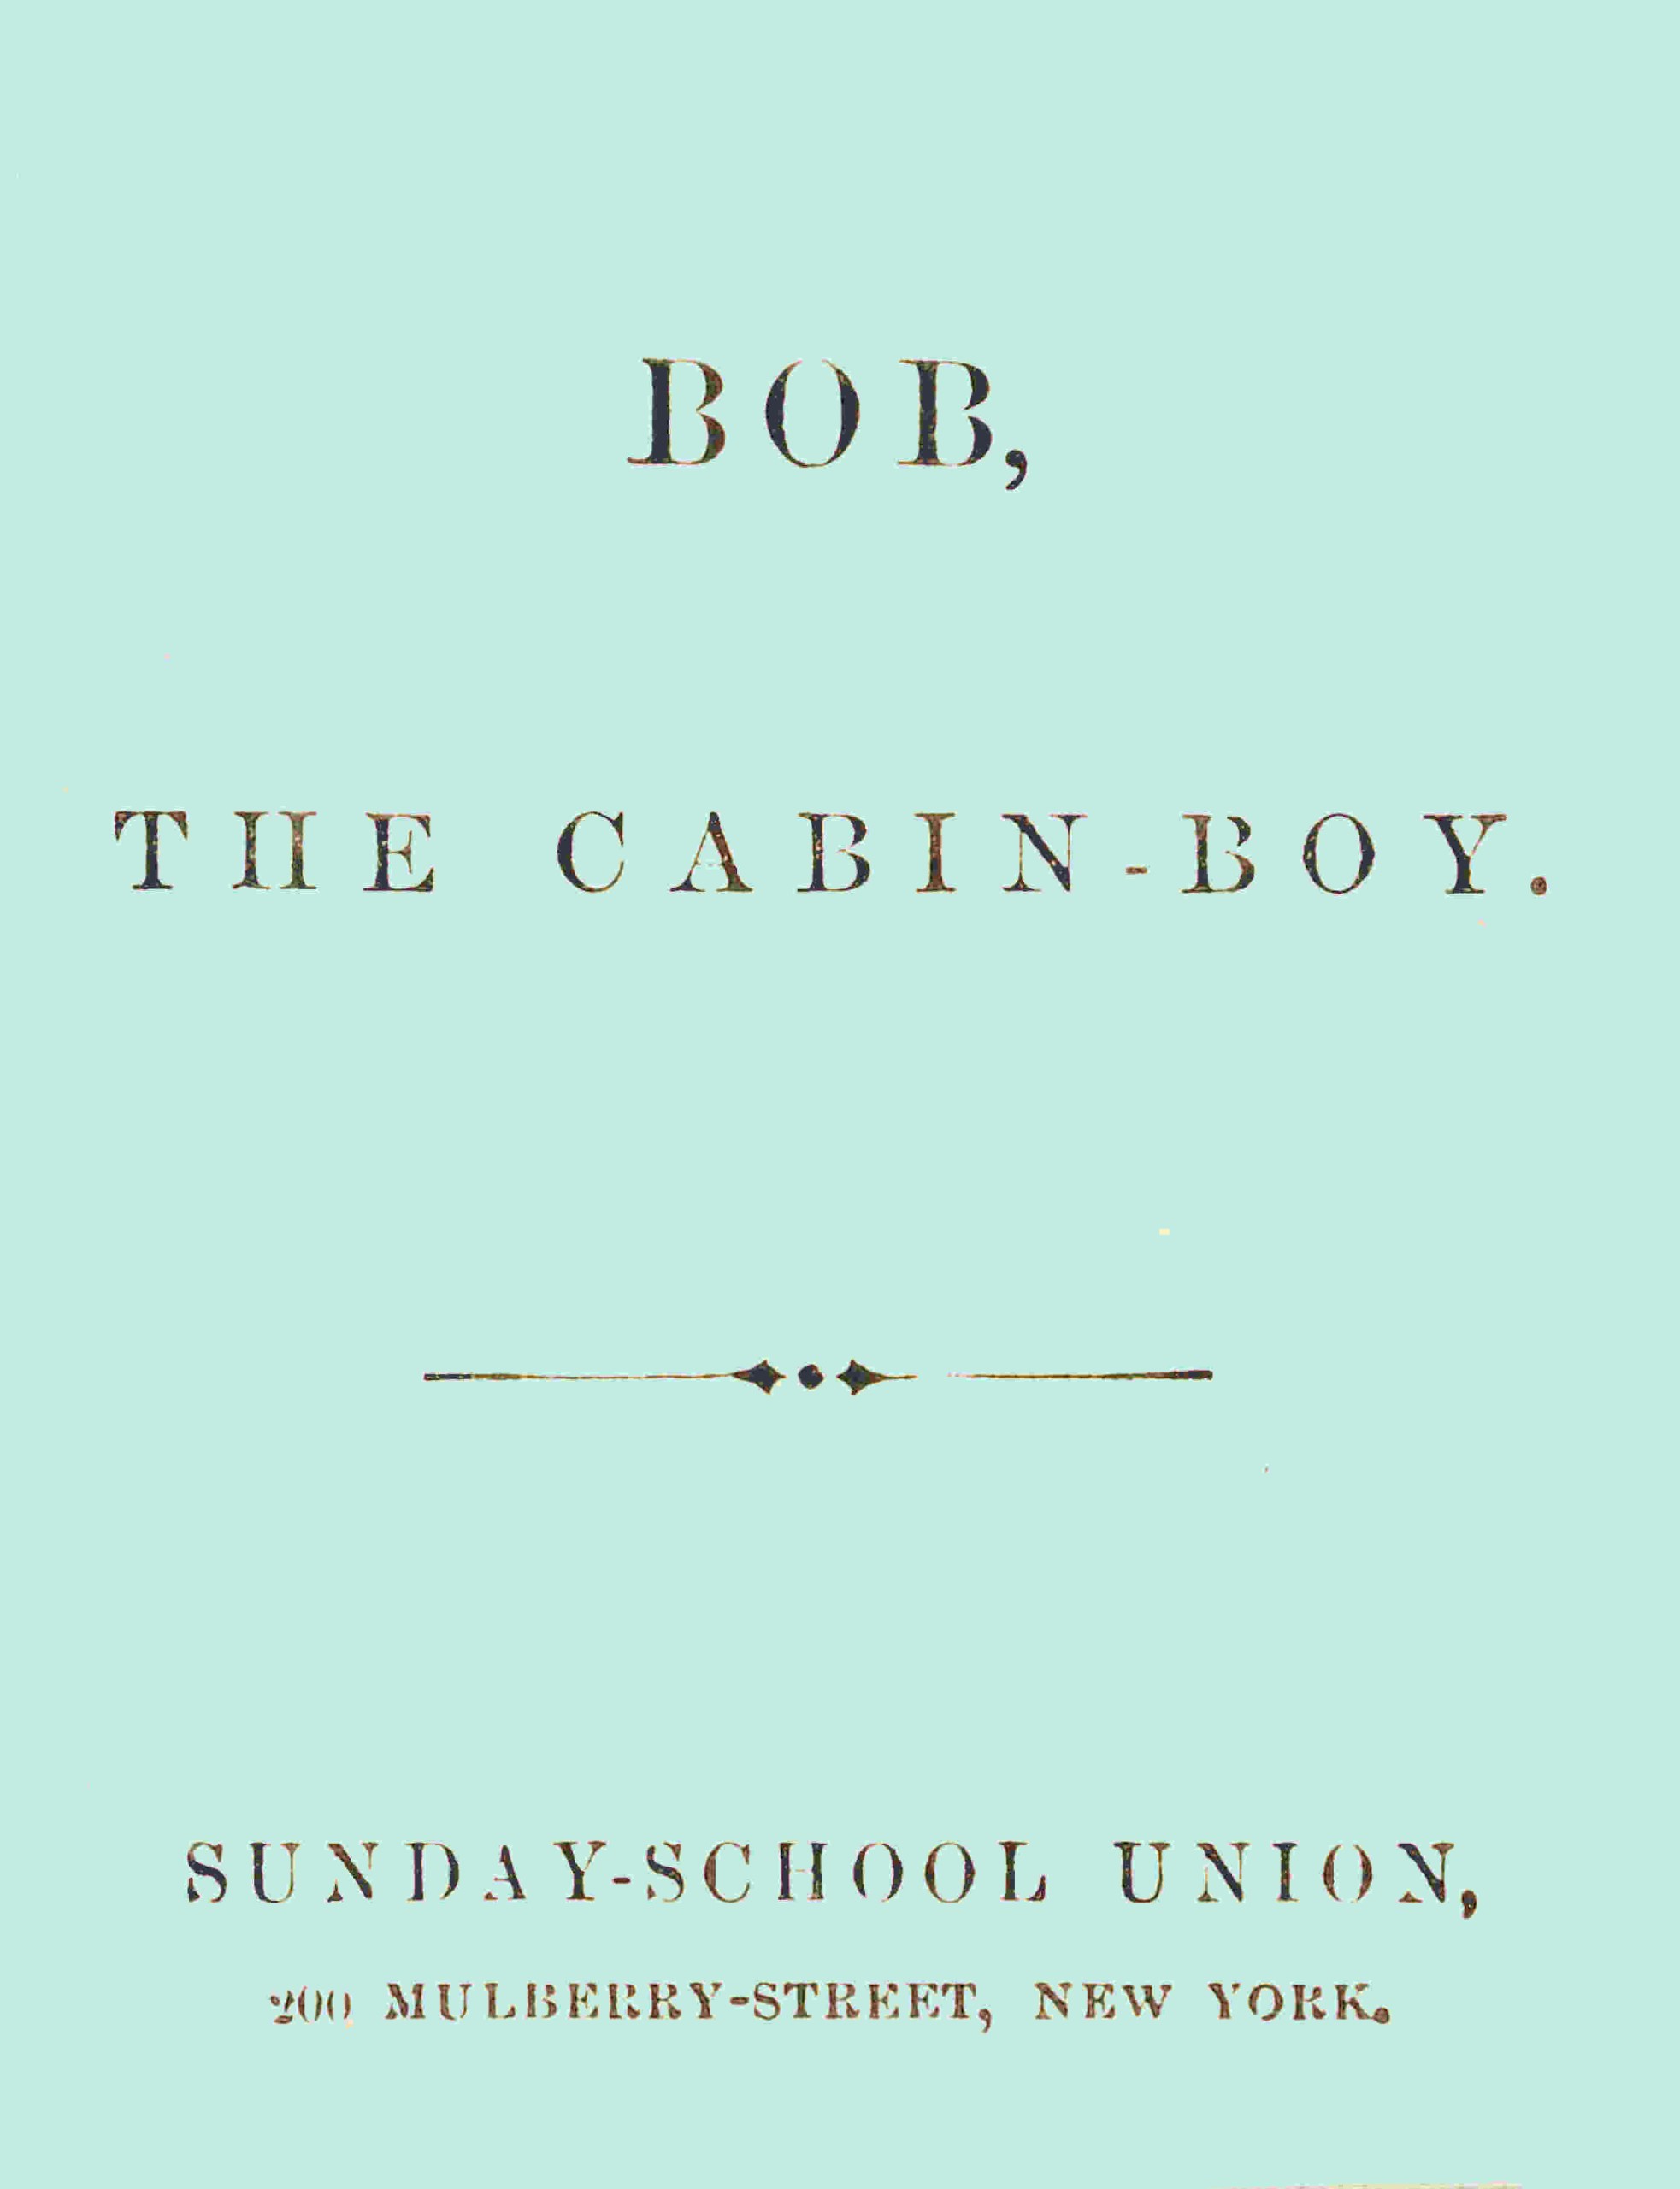 Bob, the cabin-boy